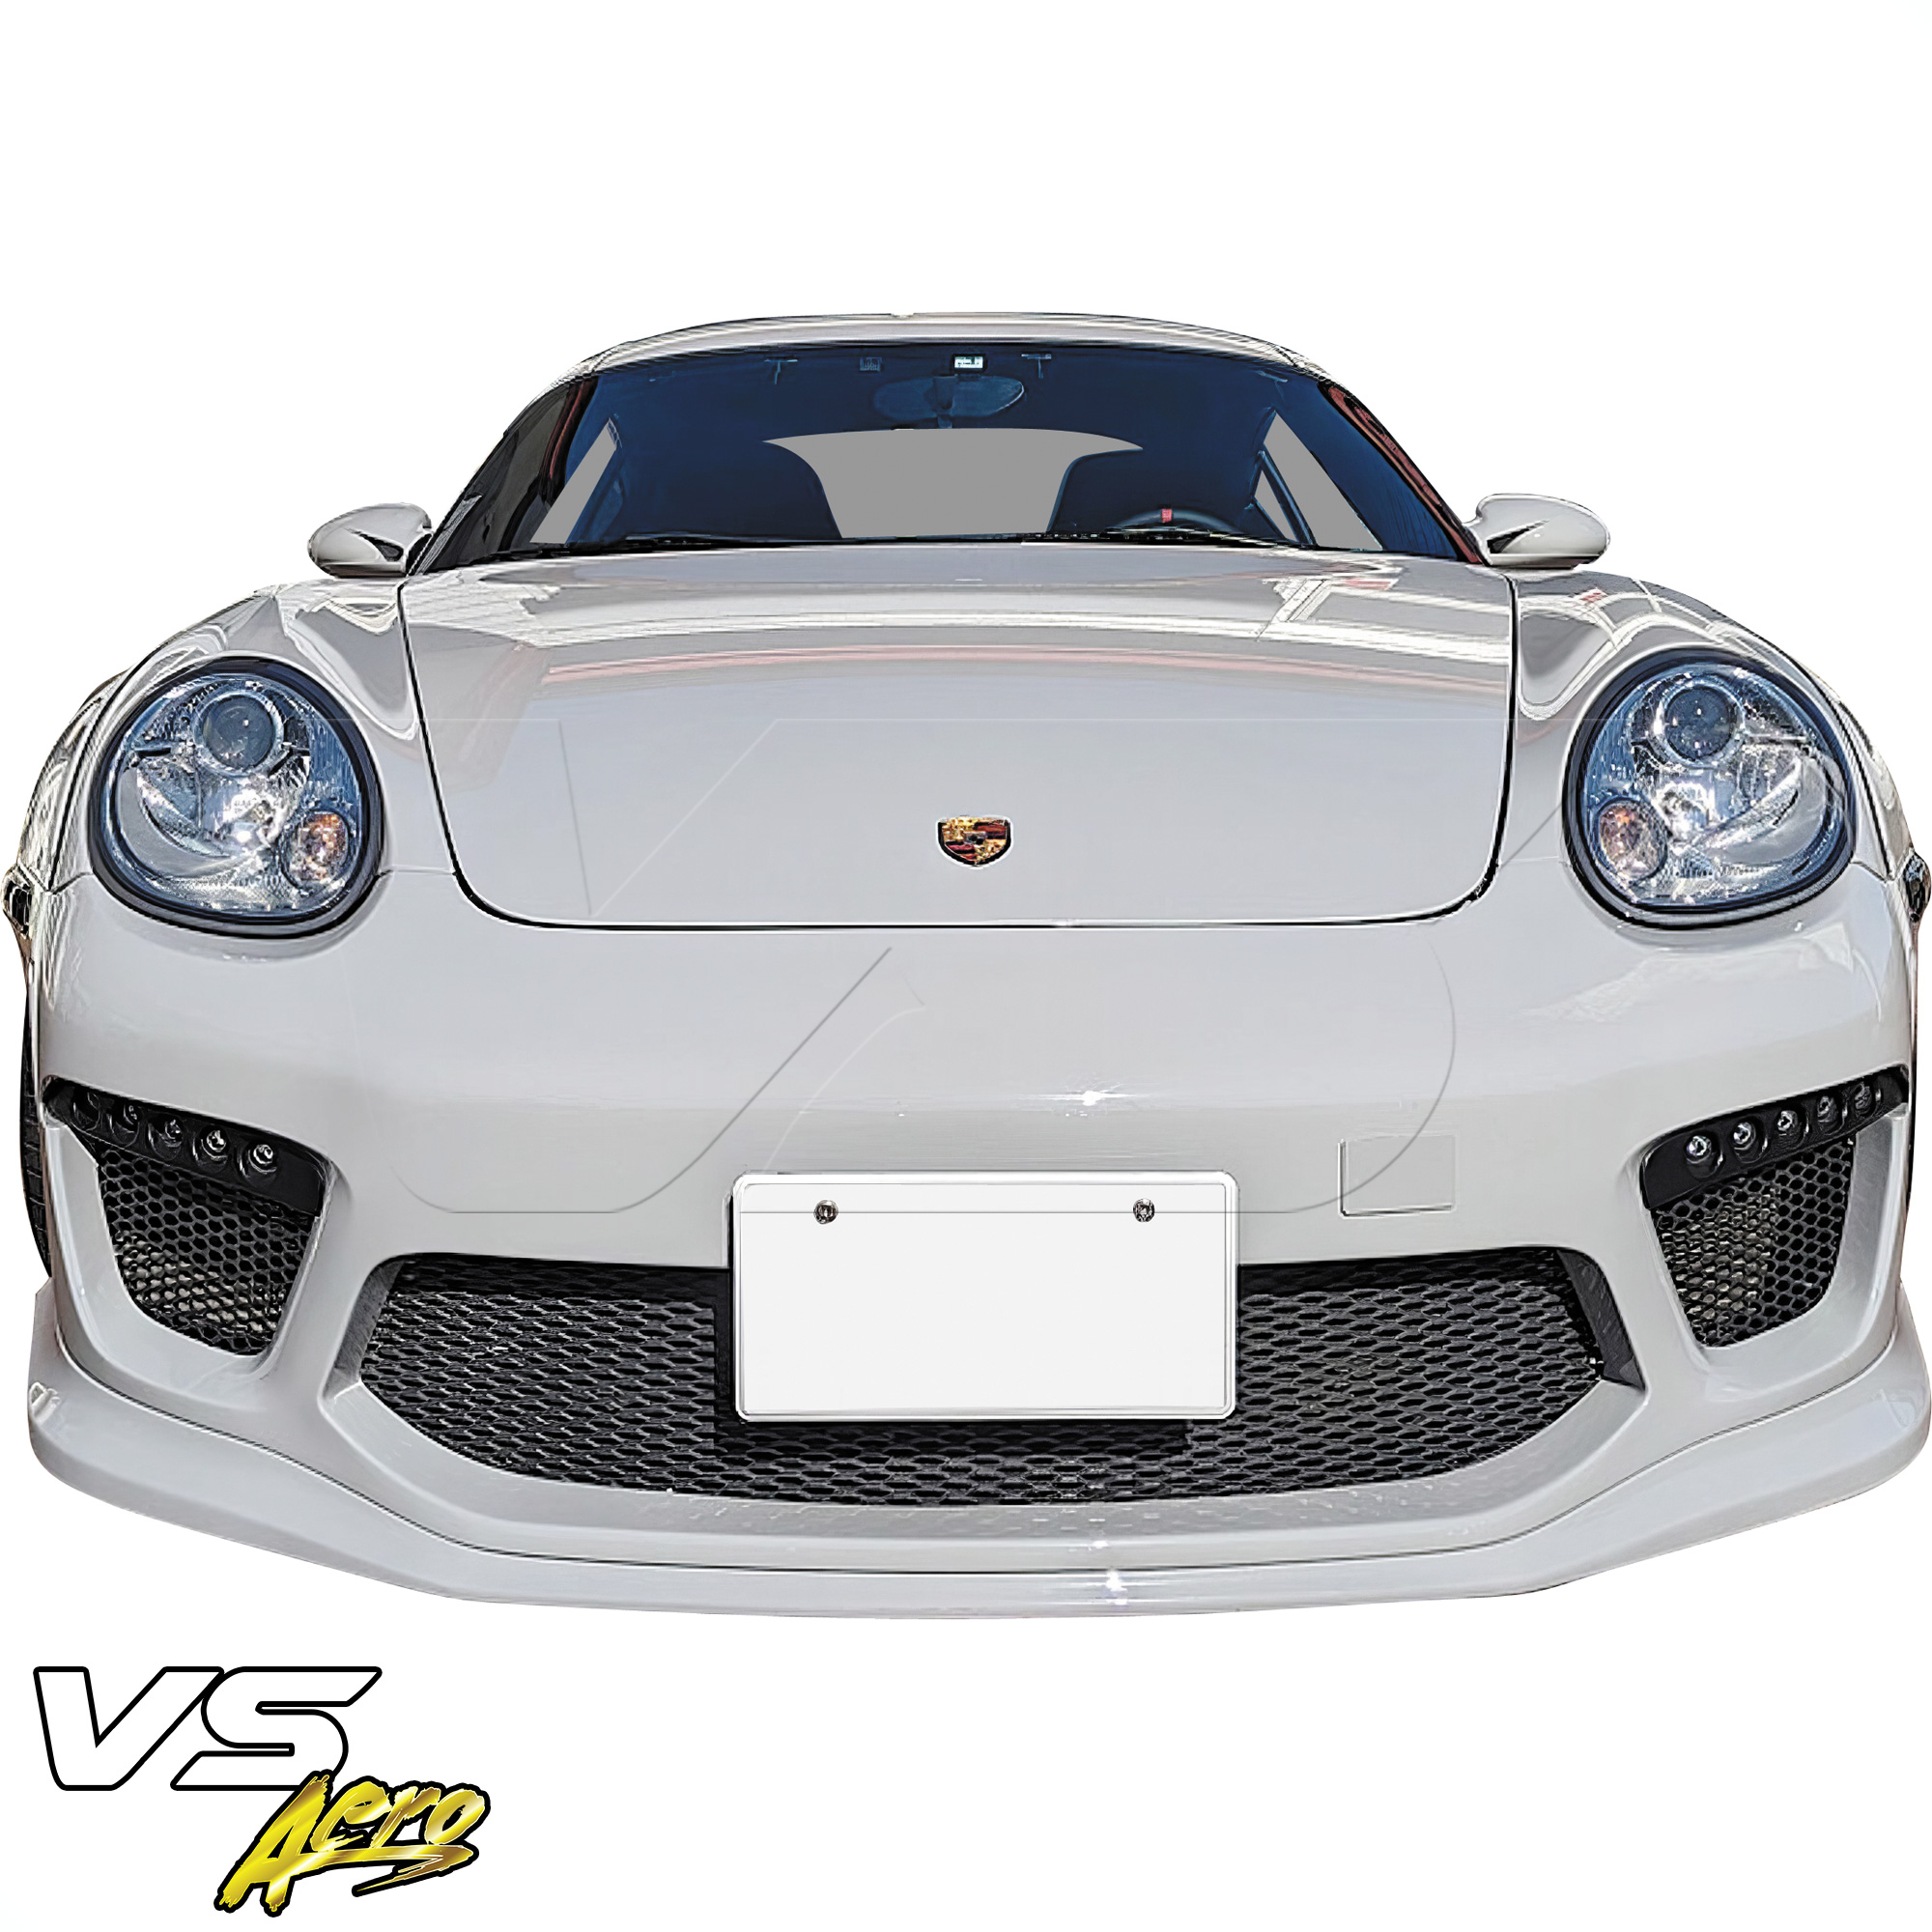 VSaero FRP TKYO v2 Wide Body Front Bumper 3pc > Porsche Cayman 987 2006-2008 - Image 4